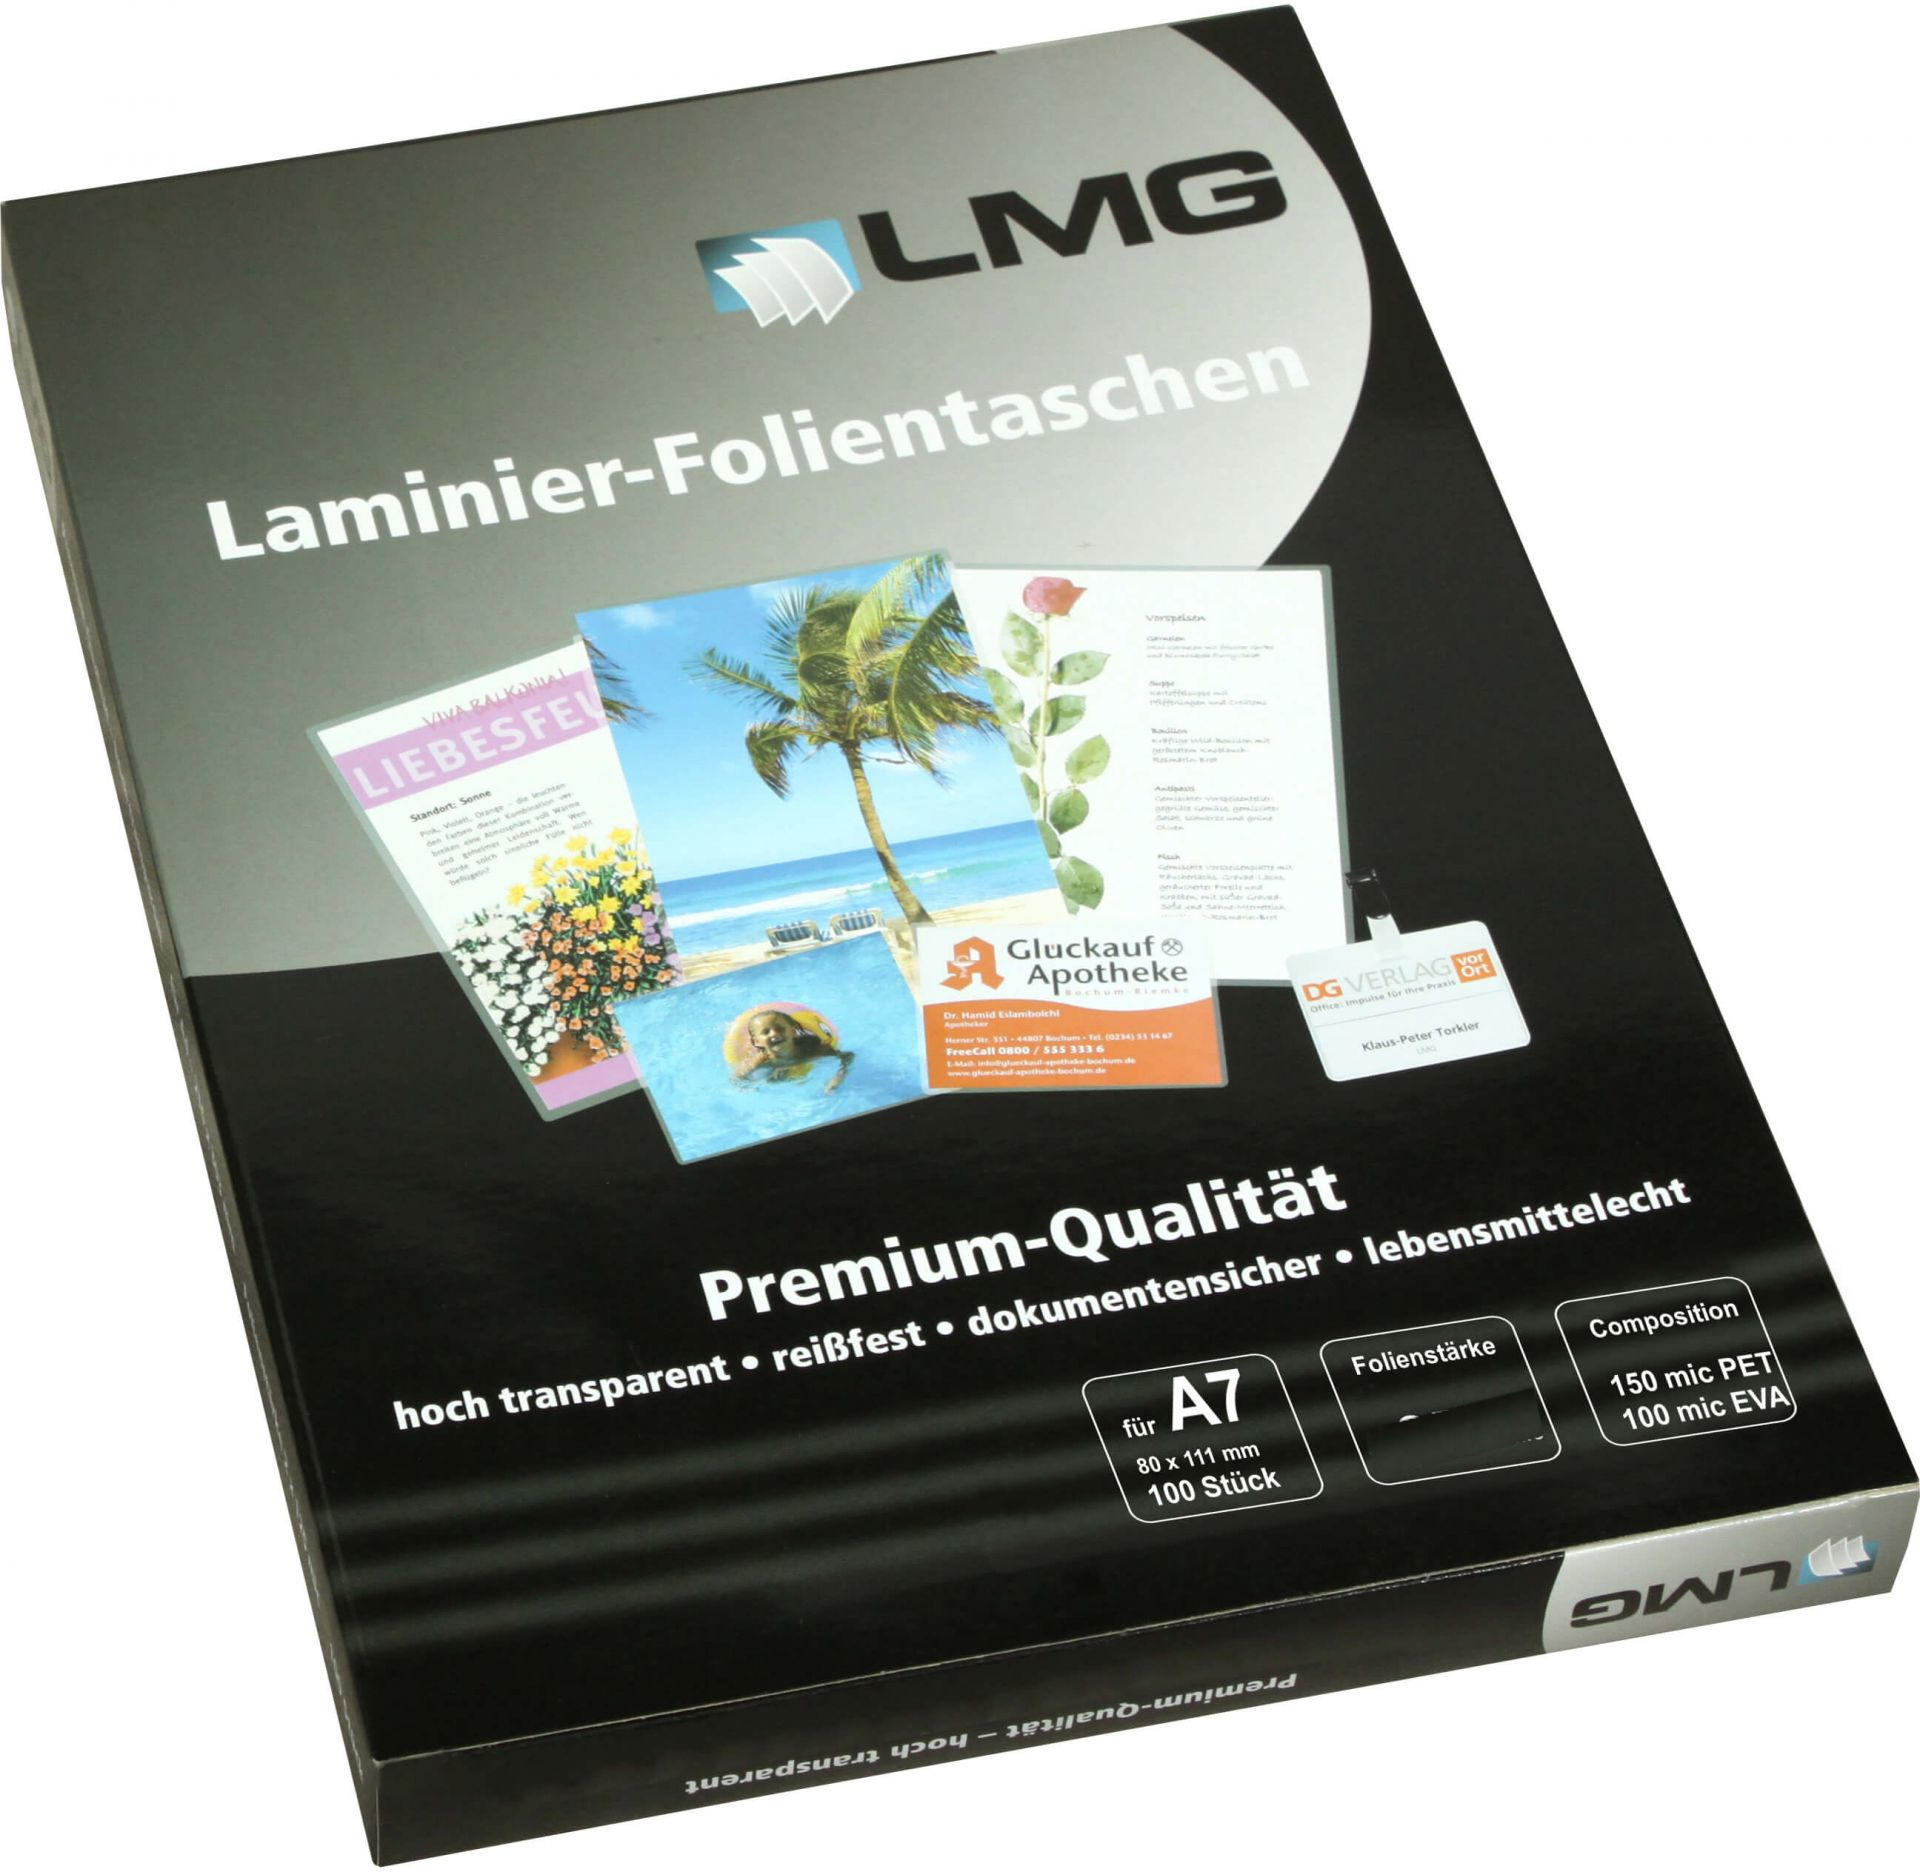 LMG Laminierfolien A7 (80 x 111 mm), 2 x 80 mic, glänzend (100 Stück)